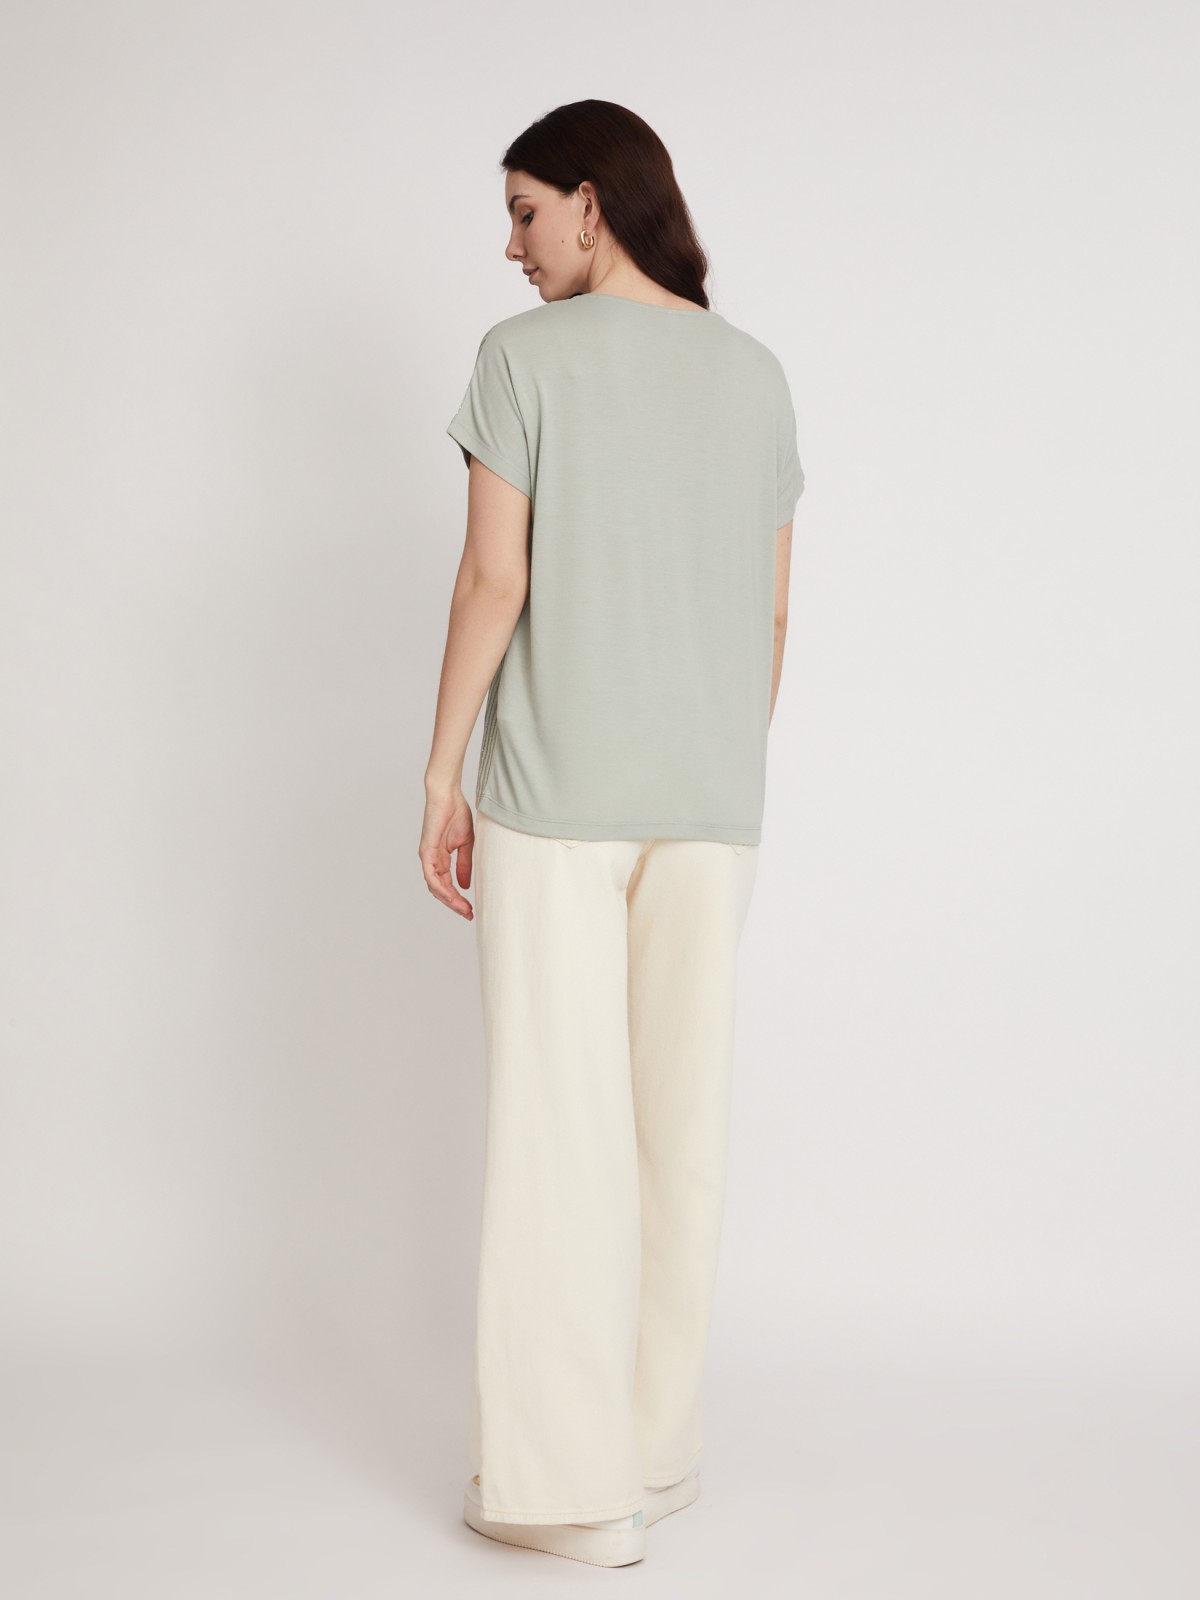 Топ-блузка с блеском zolla 023233226013, цвет светло-зеленый, размер XS - фото 6